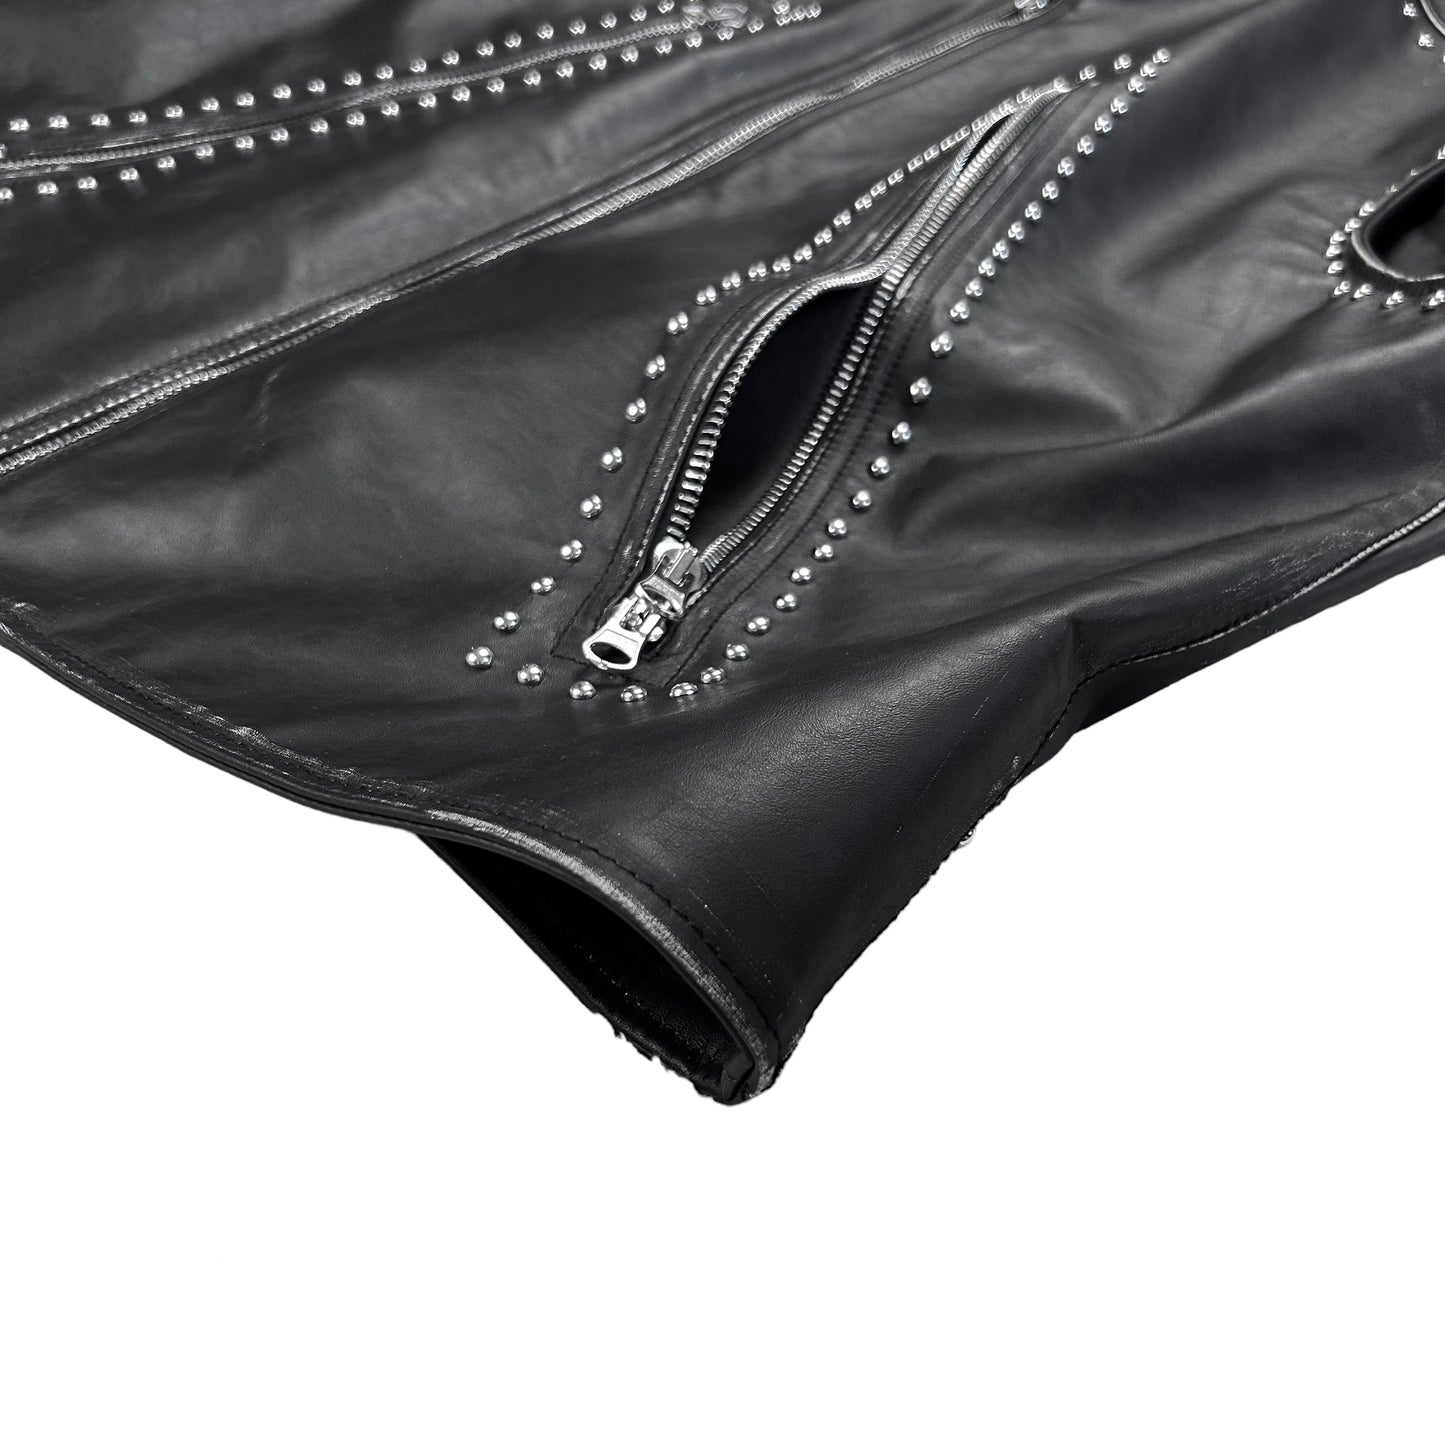 Maison Margiela MM6 Studded Leather Vest - AW22